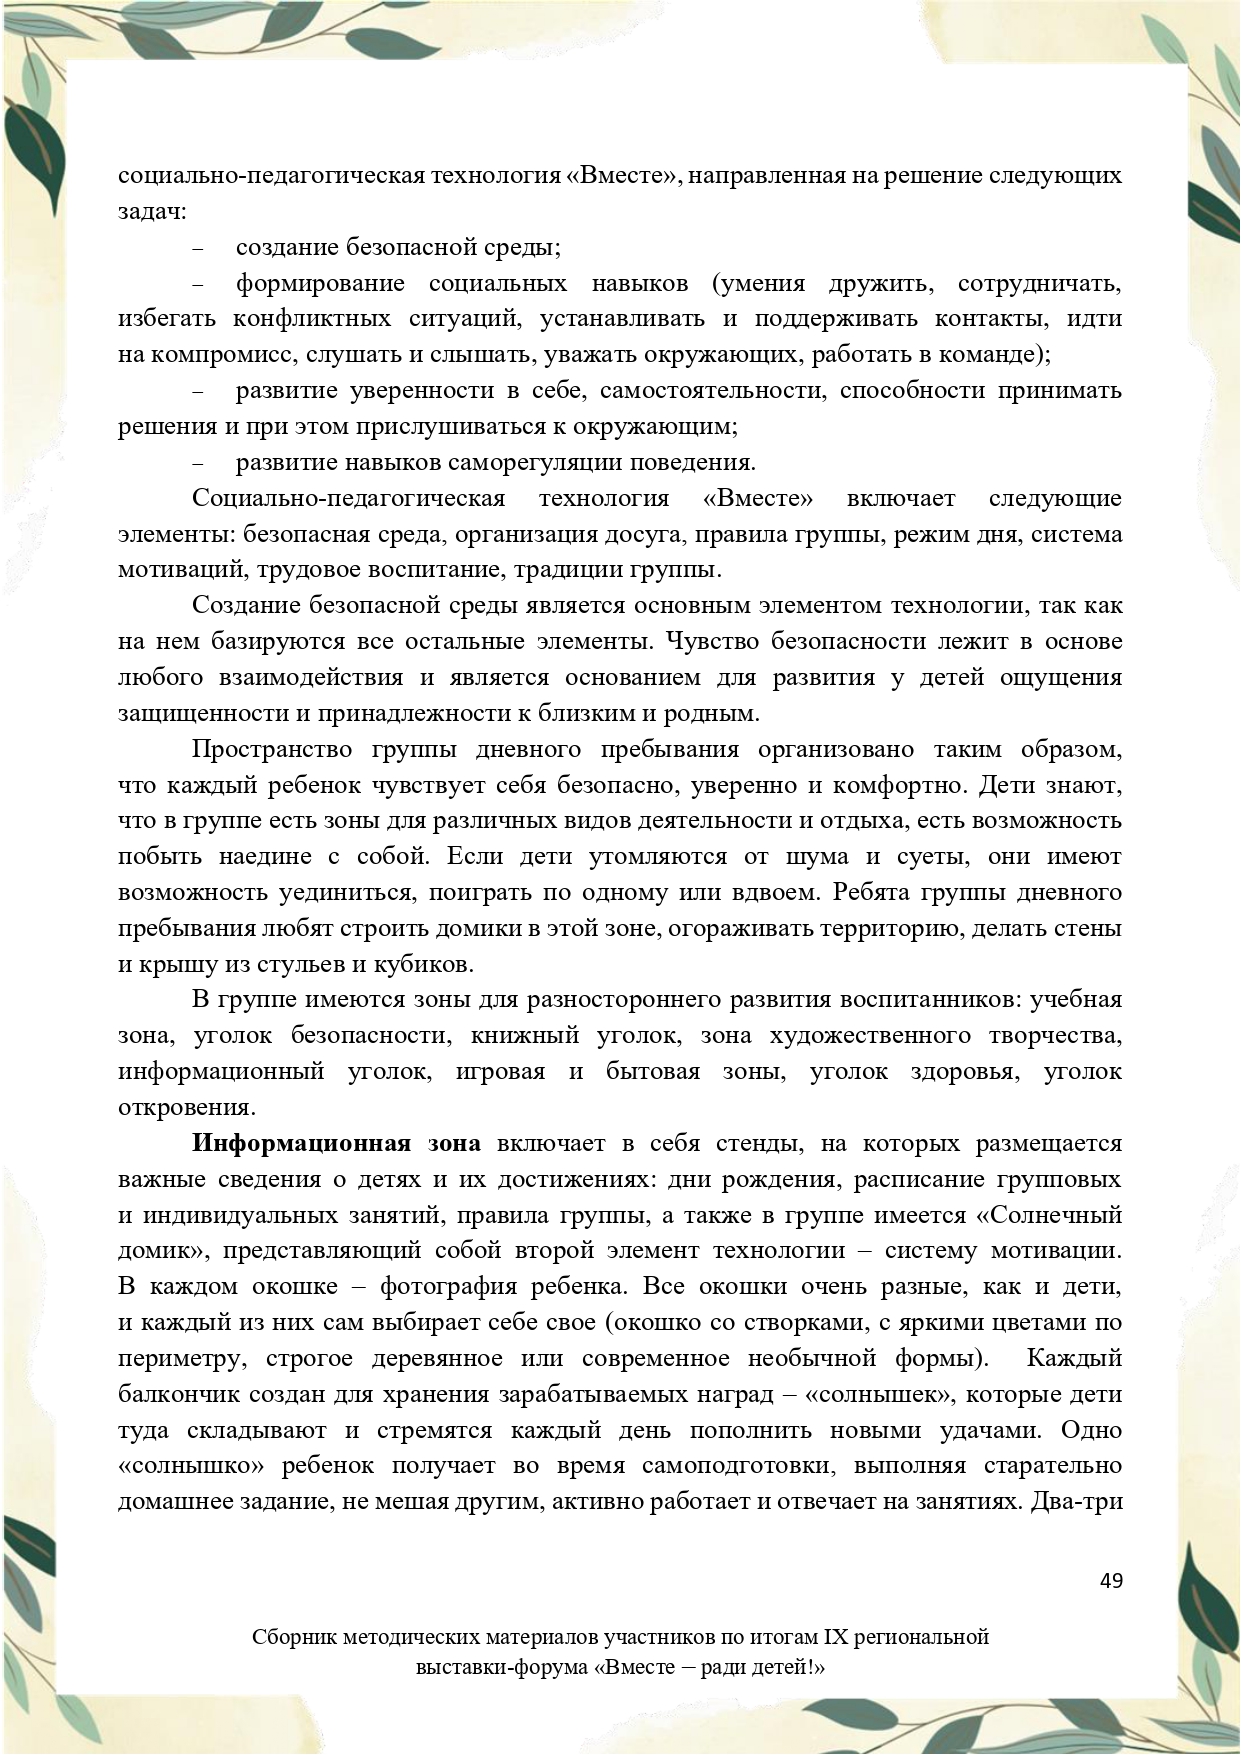 Sbornik_metodicheskikh_materialov_uchastnikov_IX_regionalnoy_vystavki-foruma_Vmeste__radi_detey_33__2023_page-0049